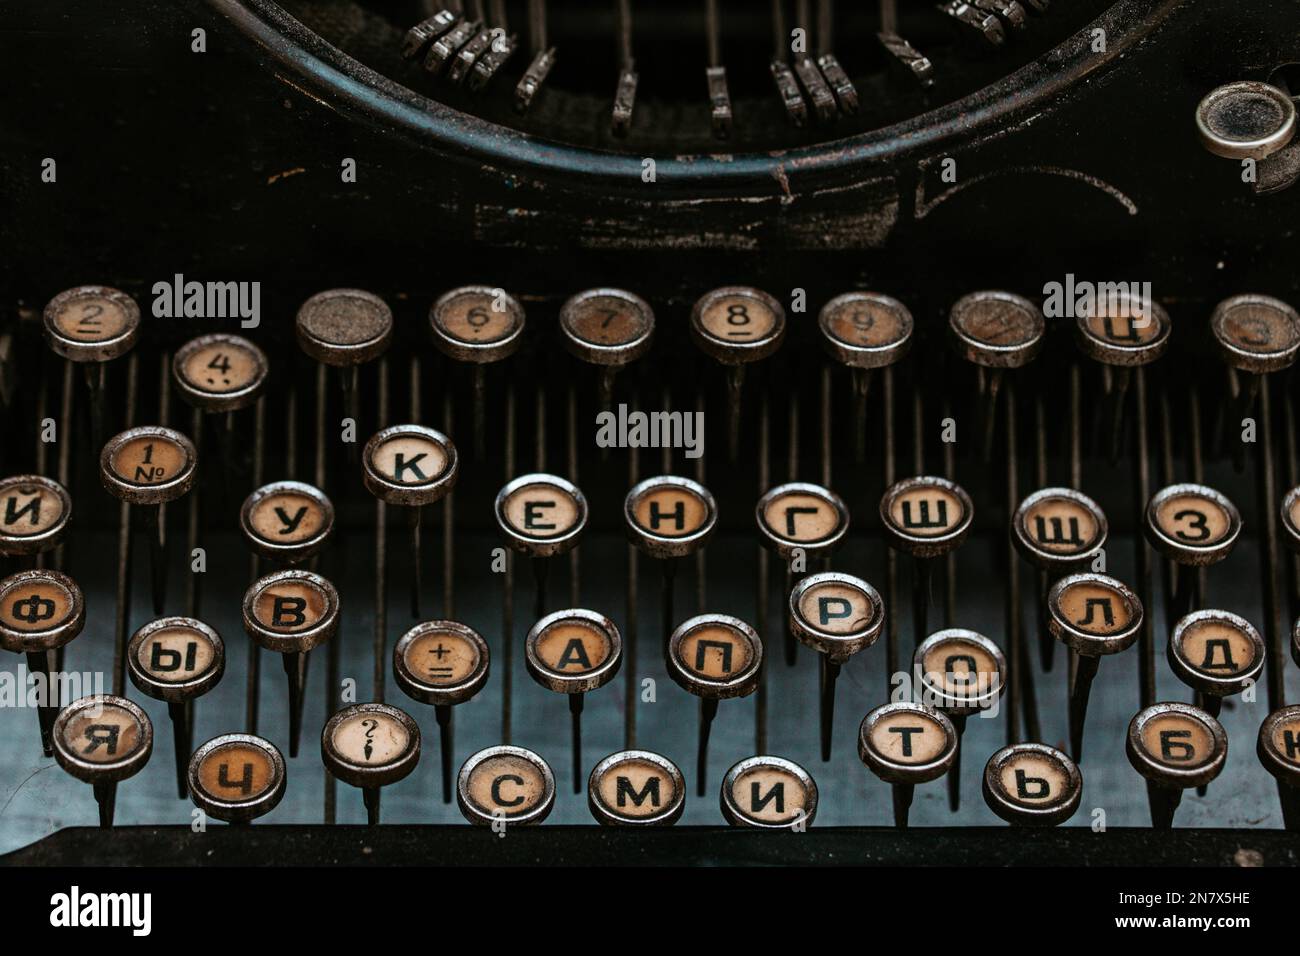 Großaufnahme der Tasten Tasten der altmodischen Schreibmaschine Underwood, Details der abgestaubten Maschinentastatur im Retro-Schreibstil Stockfoto